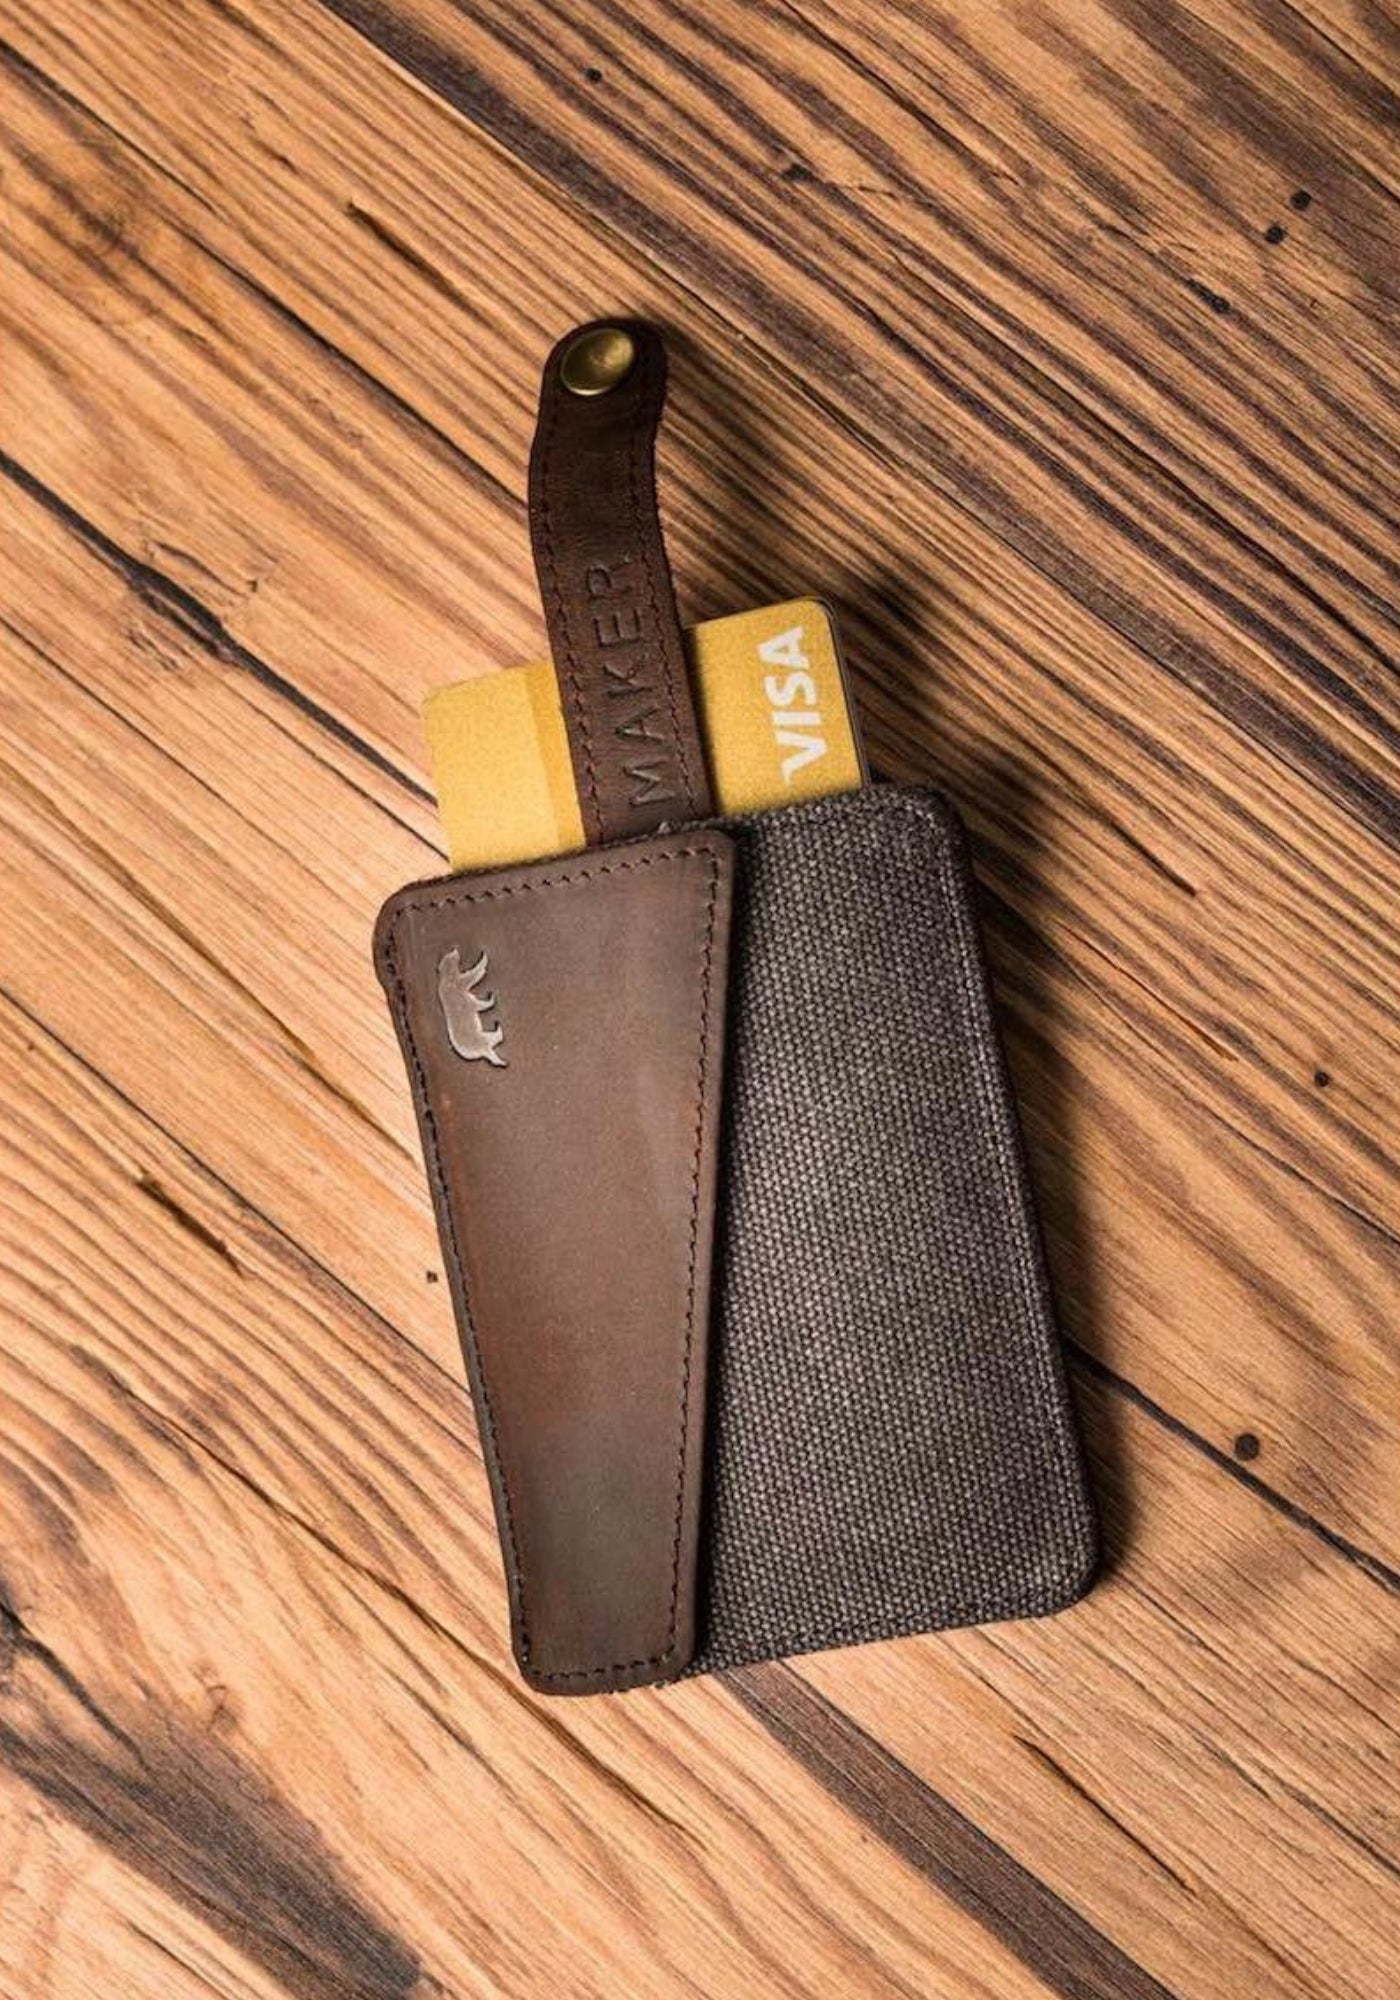 Le portefeuille pour homme petit format Handy gris anthracite de chez Alaskan Maker